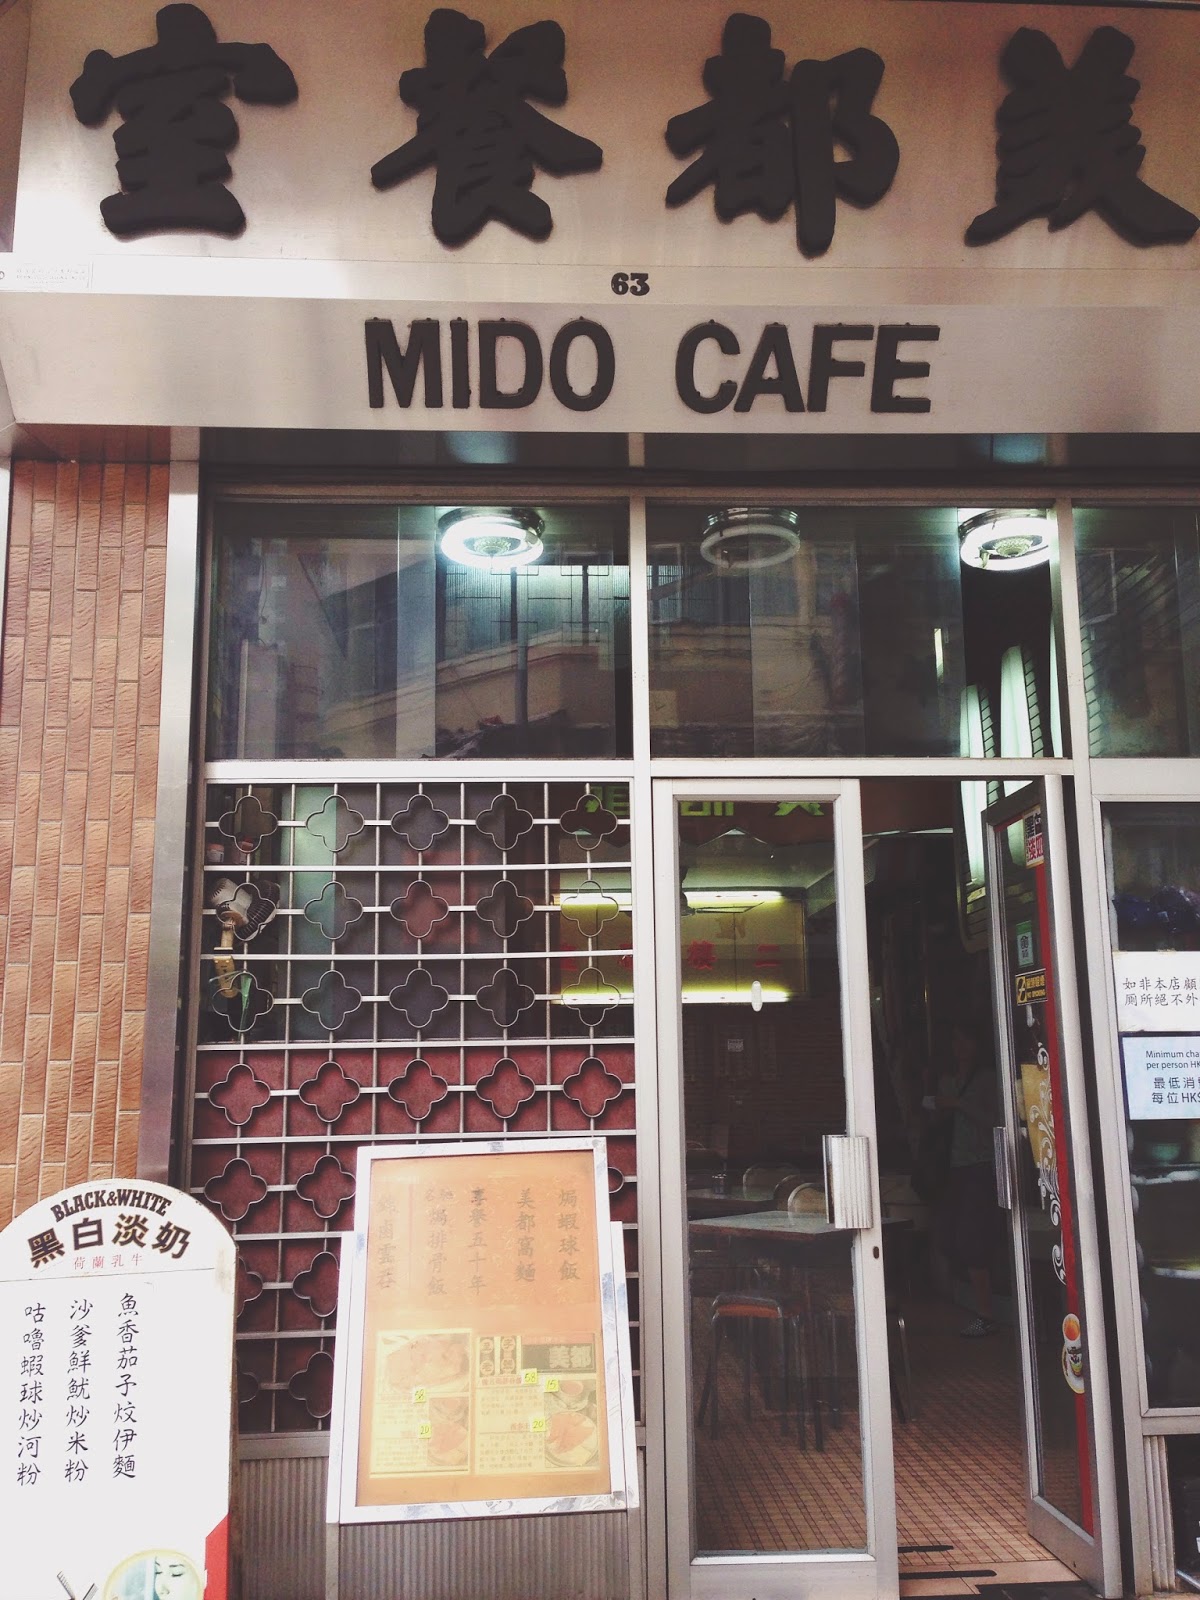 Mido Cafe Hong Kong